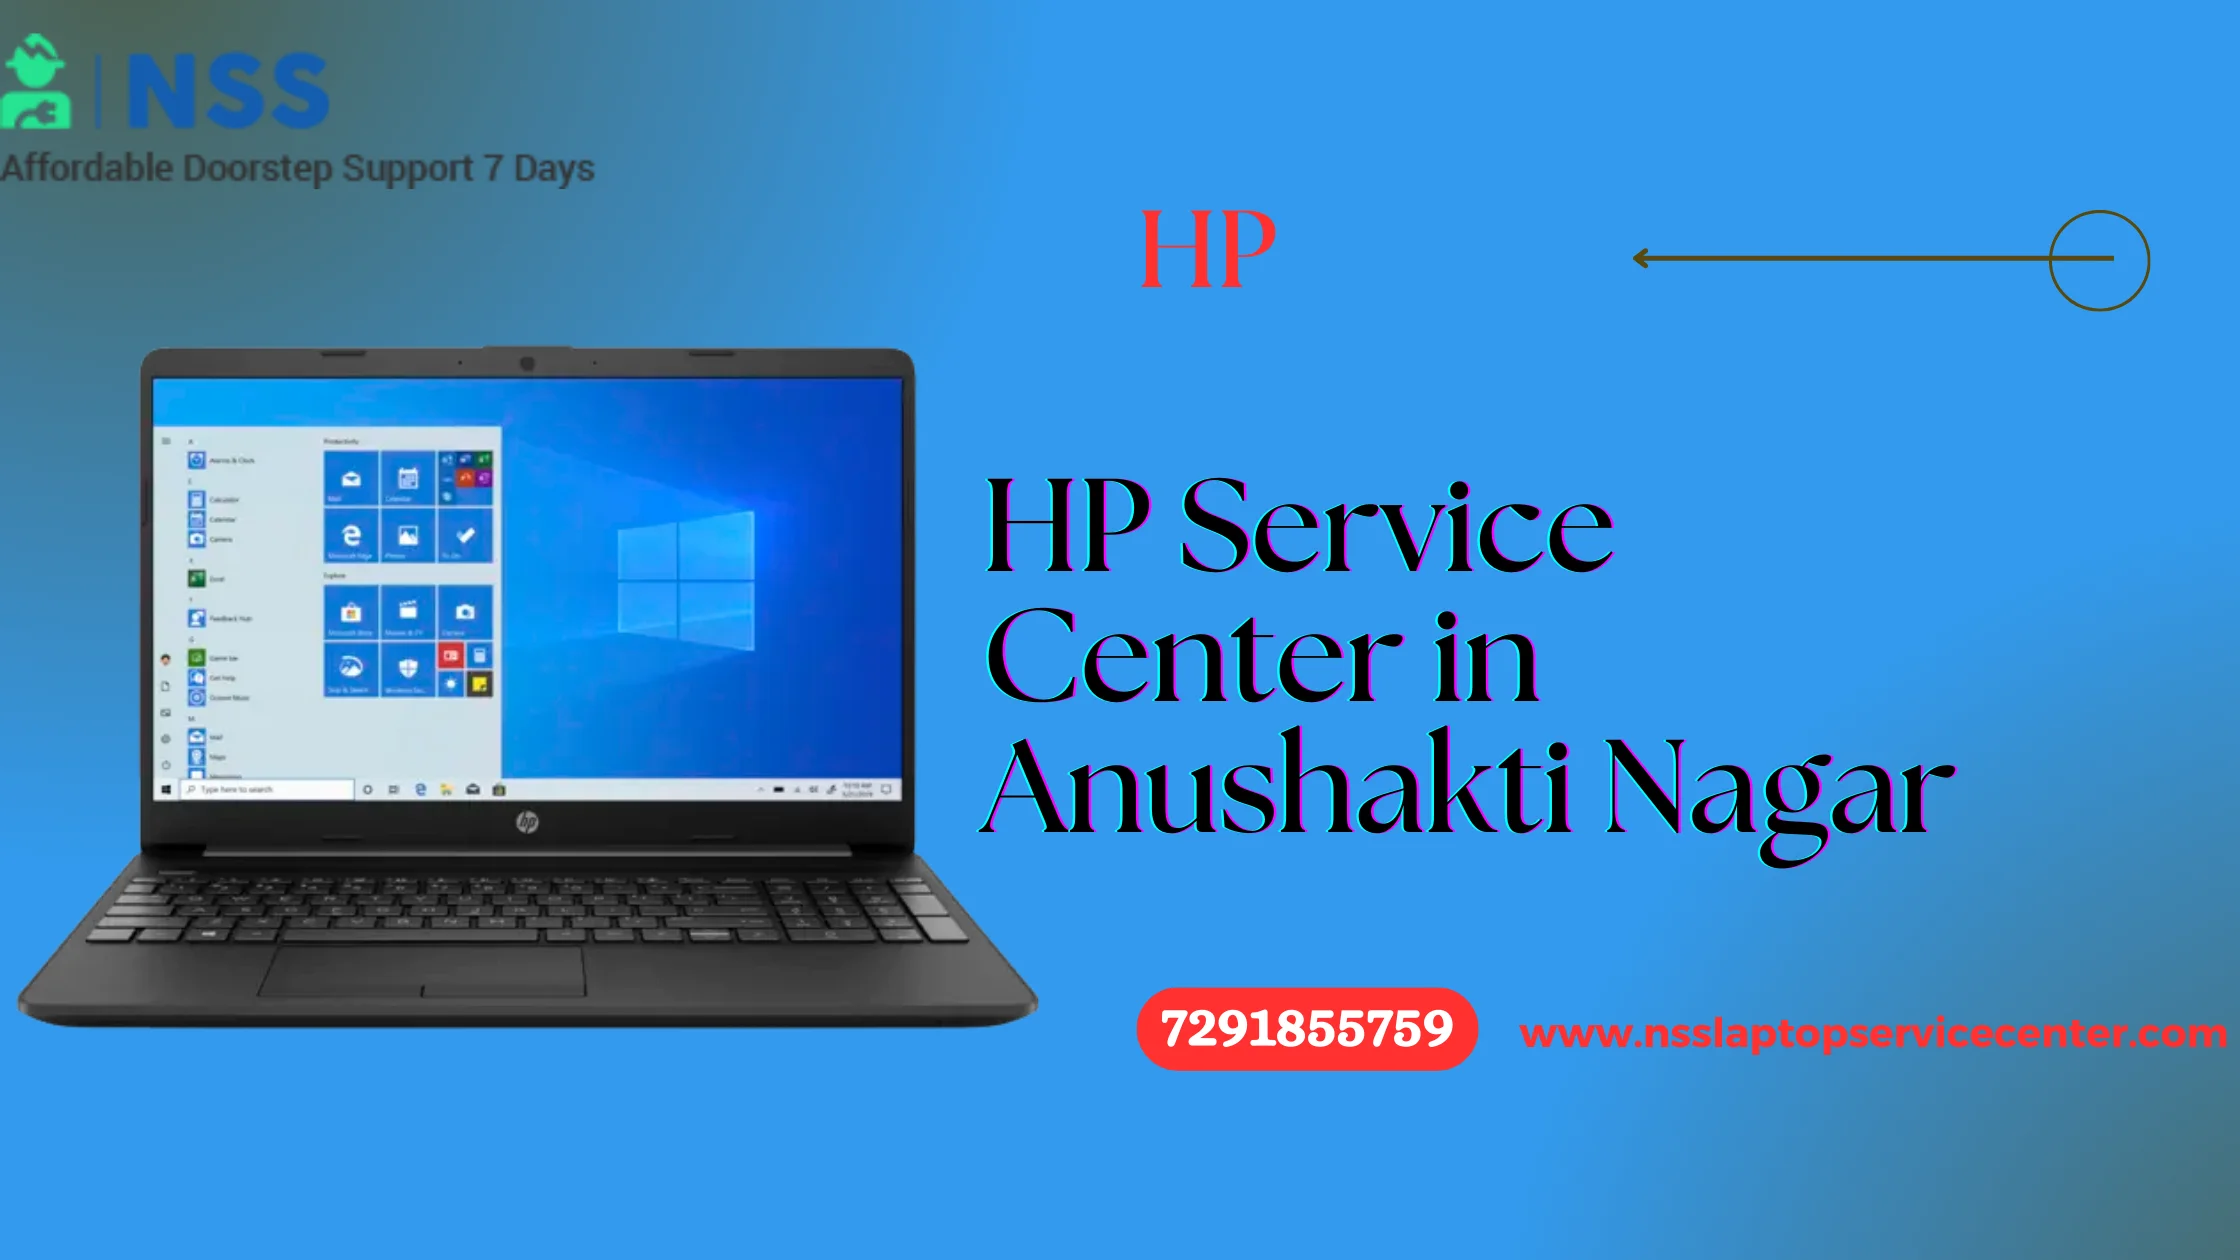 HP Service Center in Anushakti Nagar Near Mumbai